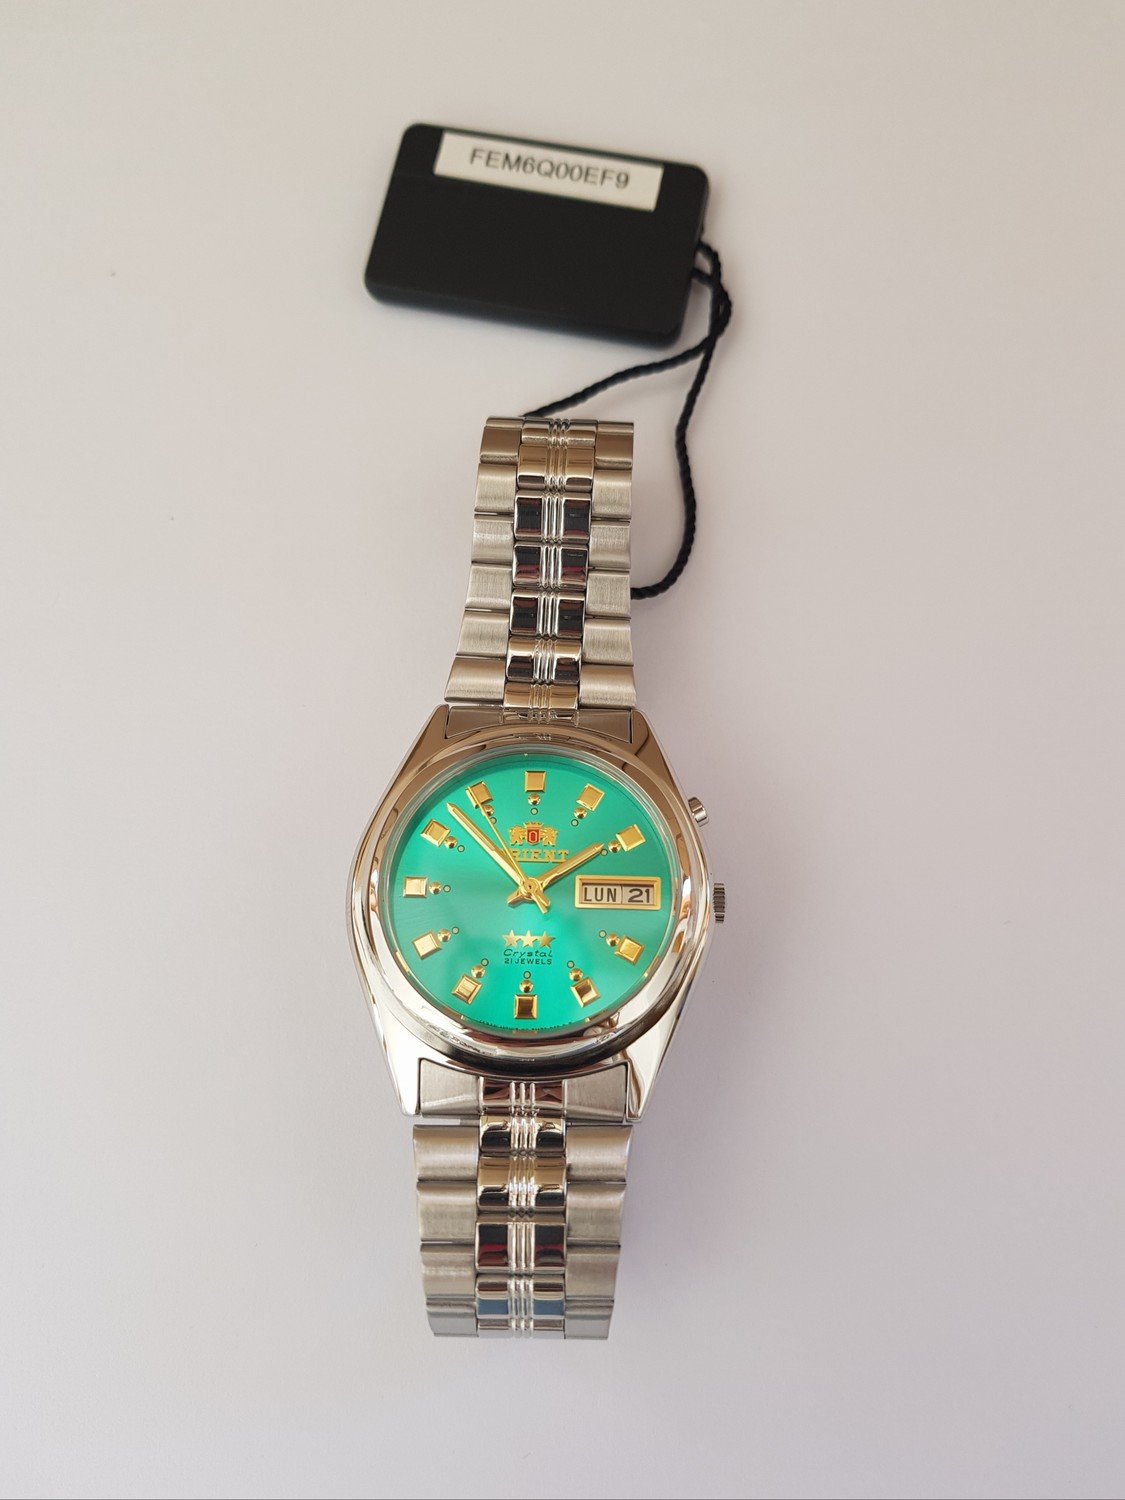 reloj hombre automático Orient Tristar FEM6Q00EF9 verde acero